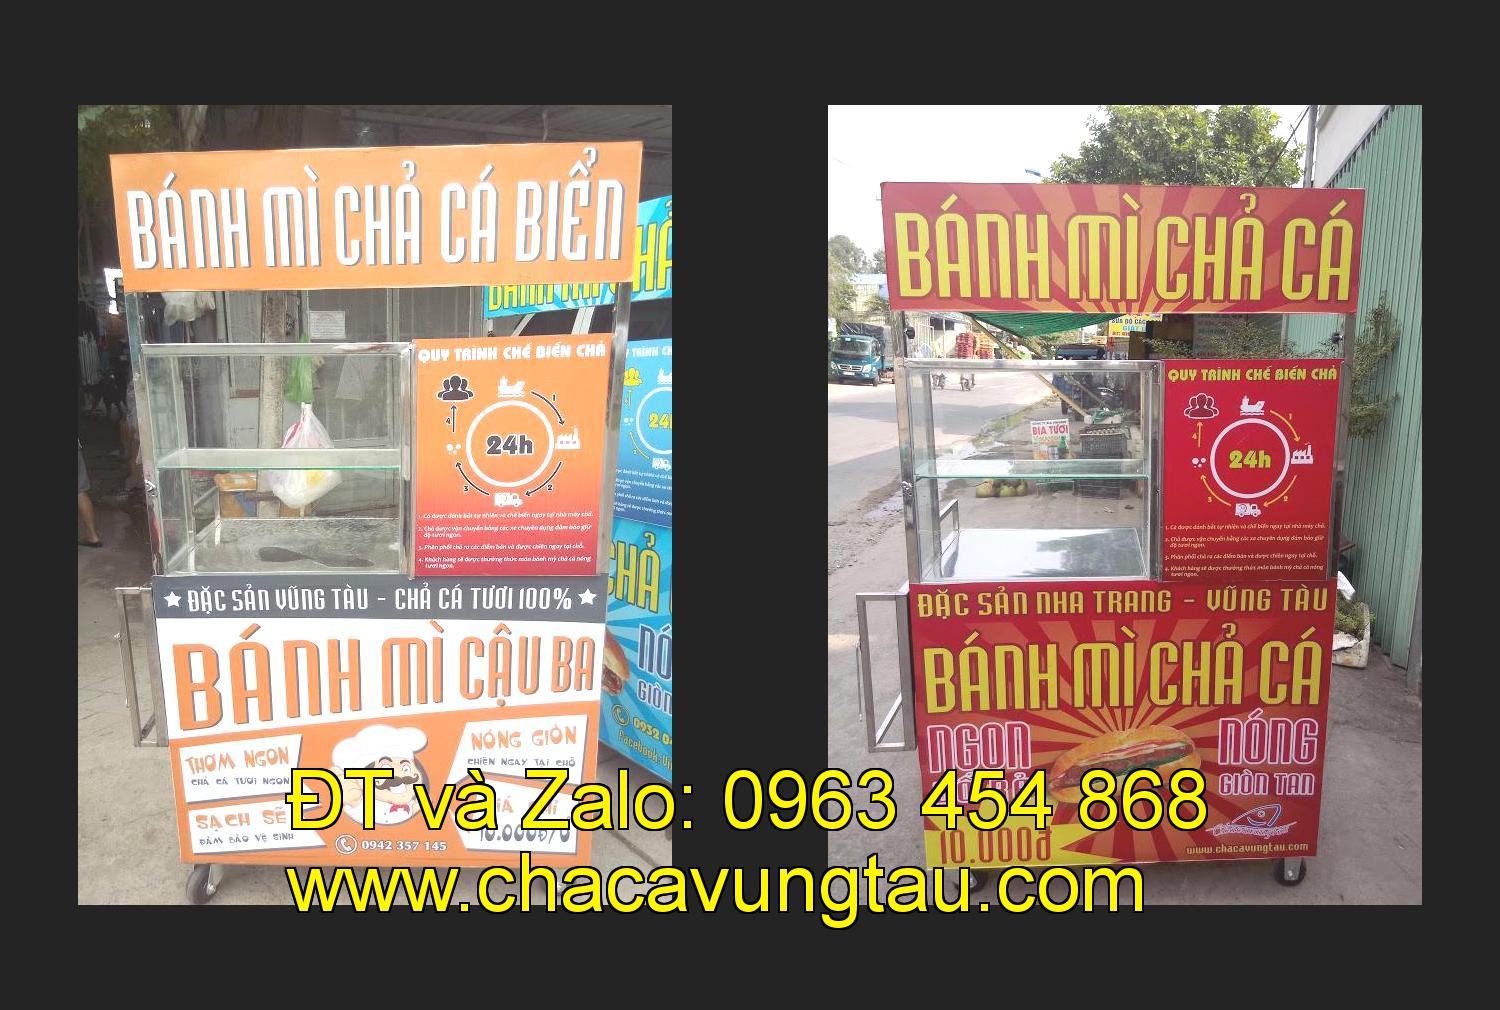 Bán xe bánh mì chả cá tại tỉnh Yên Bái